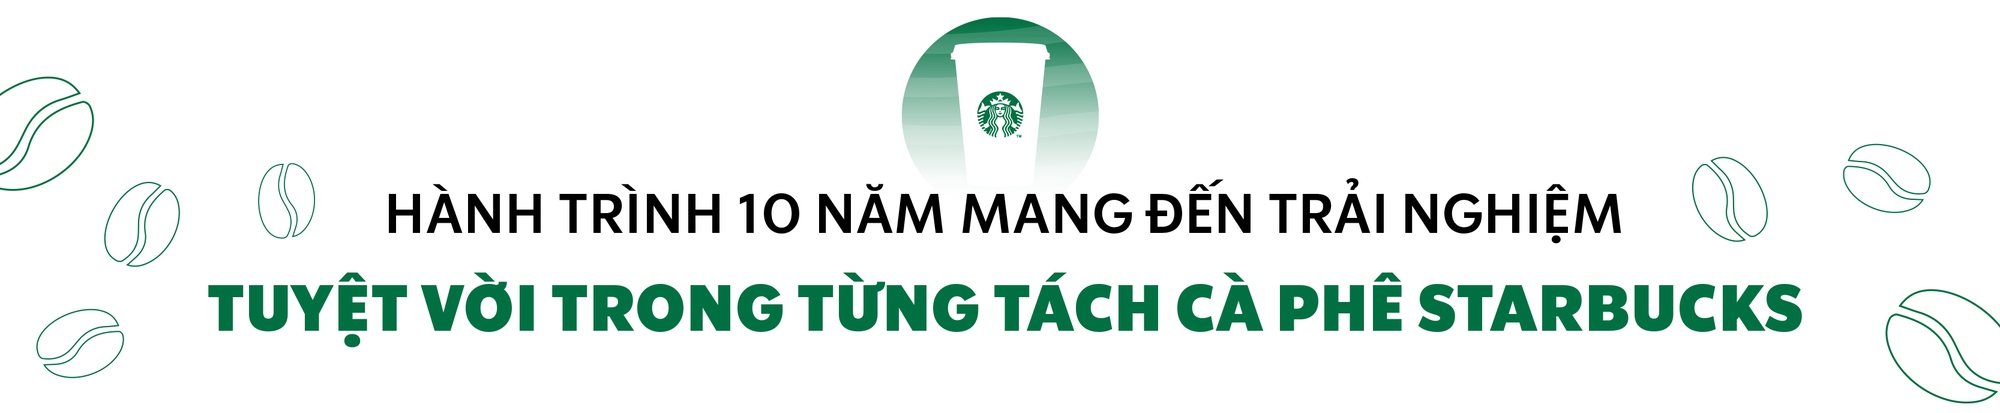 Starbucks Vietnam từ thương hiệu quốc tế đến dẫn dắt xu hướng cà phê Việt suốt một thập kỷ - Ảnh 1.